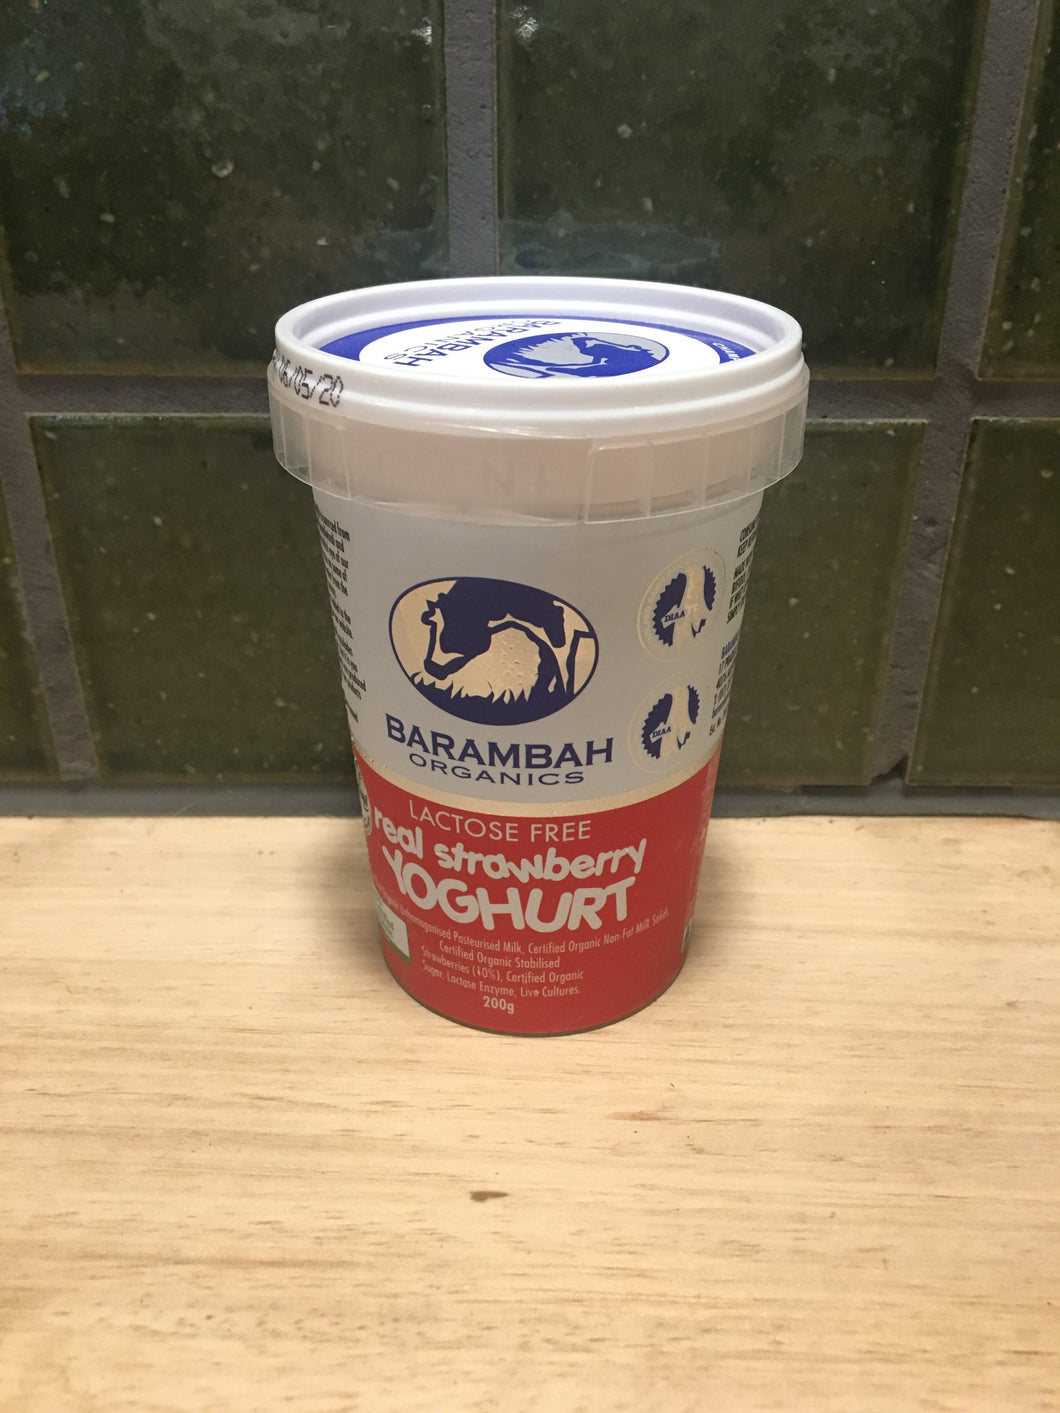 Barambah Yoghurt Strawberry 200g